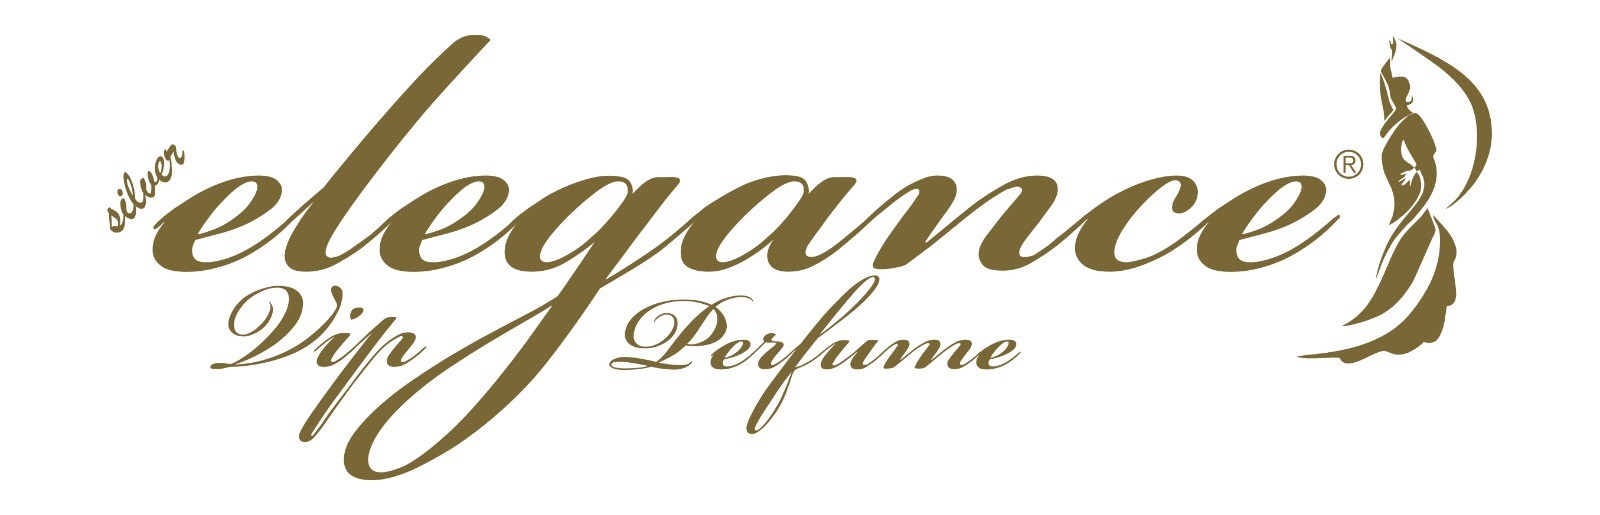 Elegance Vip Parfume